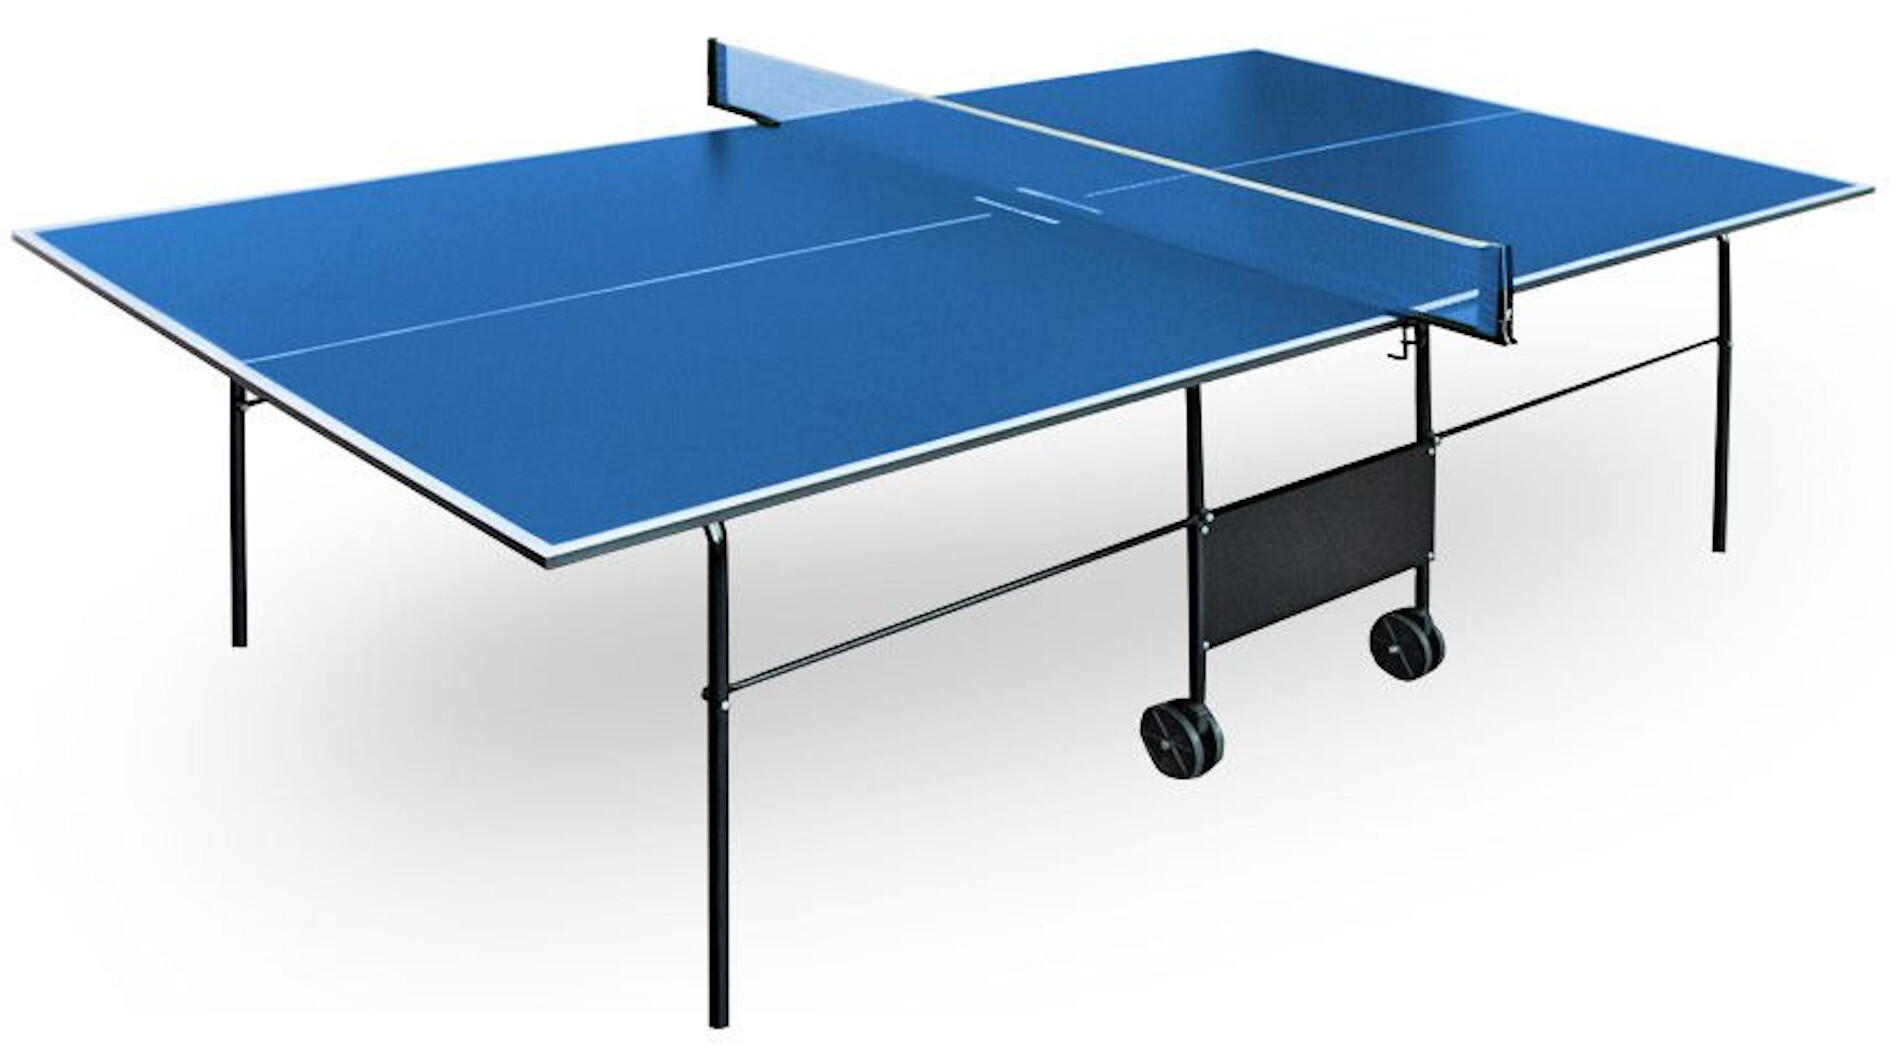 Старлайн теннисные столы. Теннисный стол всепогодный Standart New 2. Теннисный стол Cornilleau Hobby Mini. Теннисный стол Borneo Drive Blue. Стол теннисный Atemi Creber.